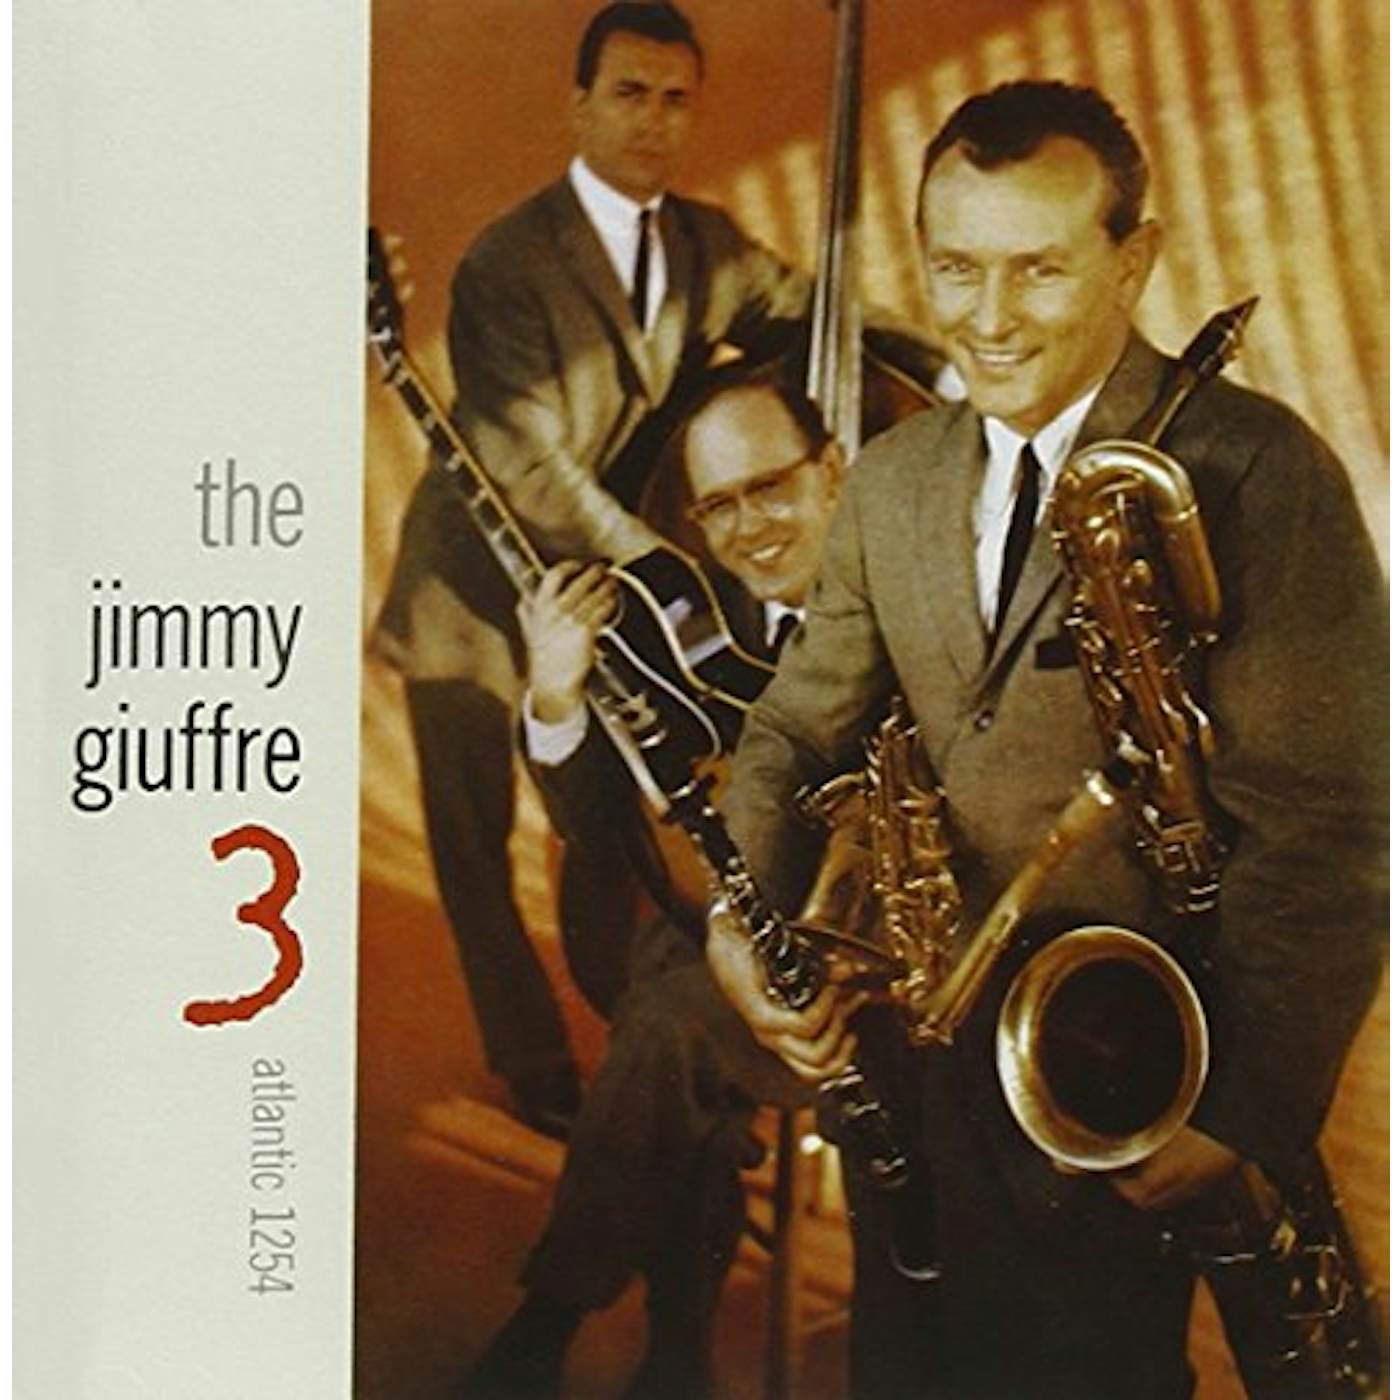 JIMMY GIUFFRE 3 CD